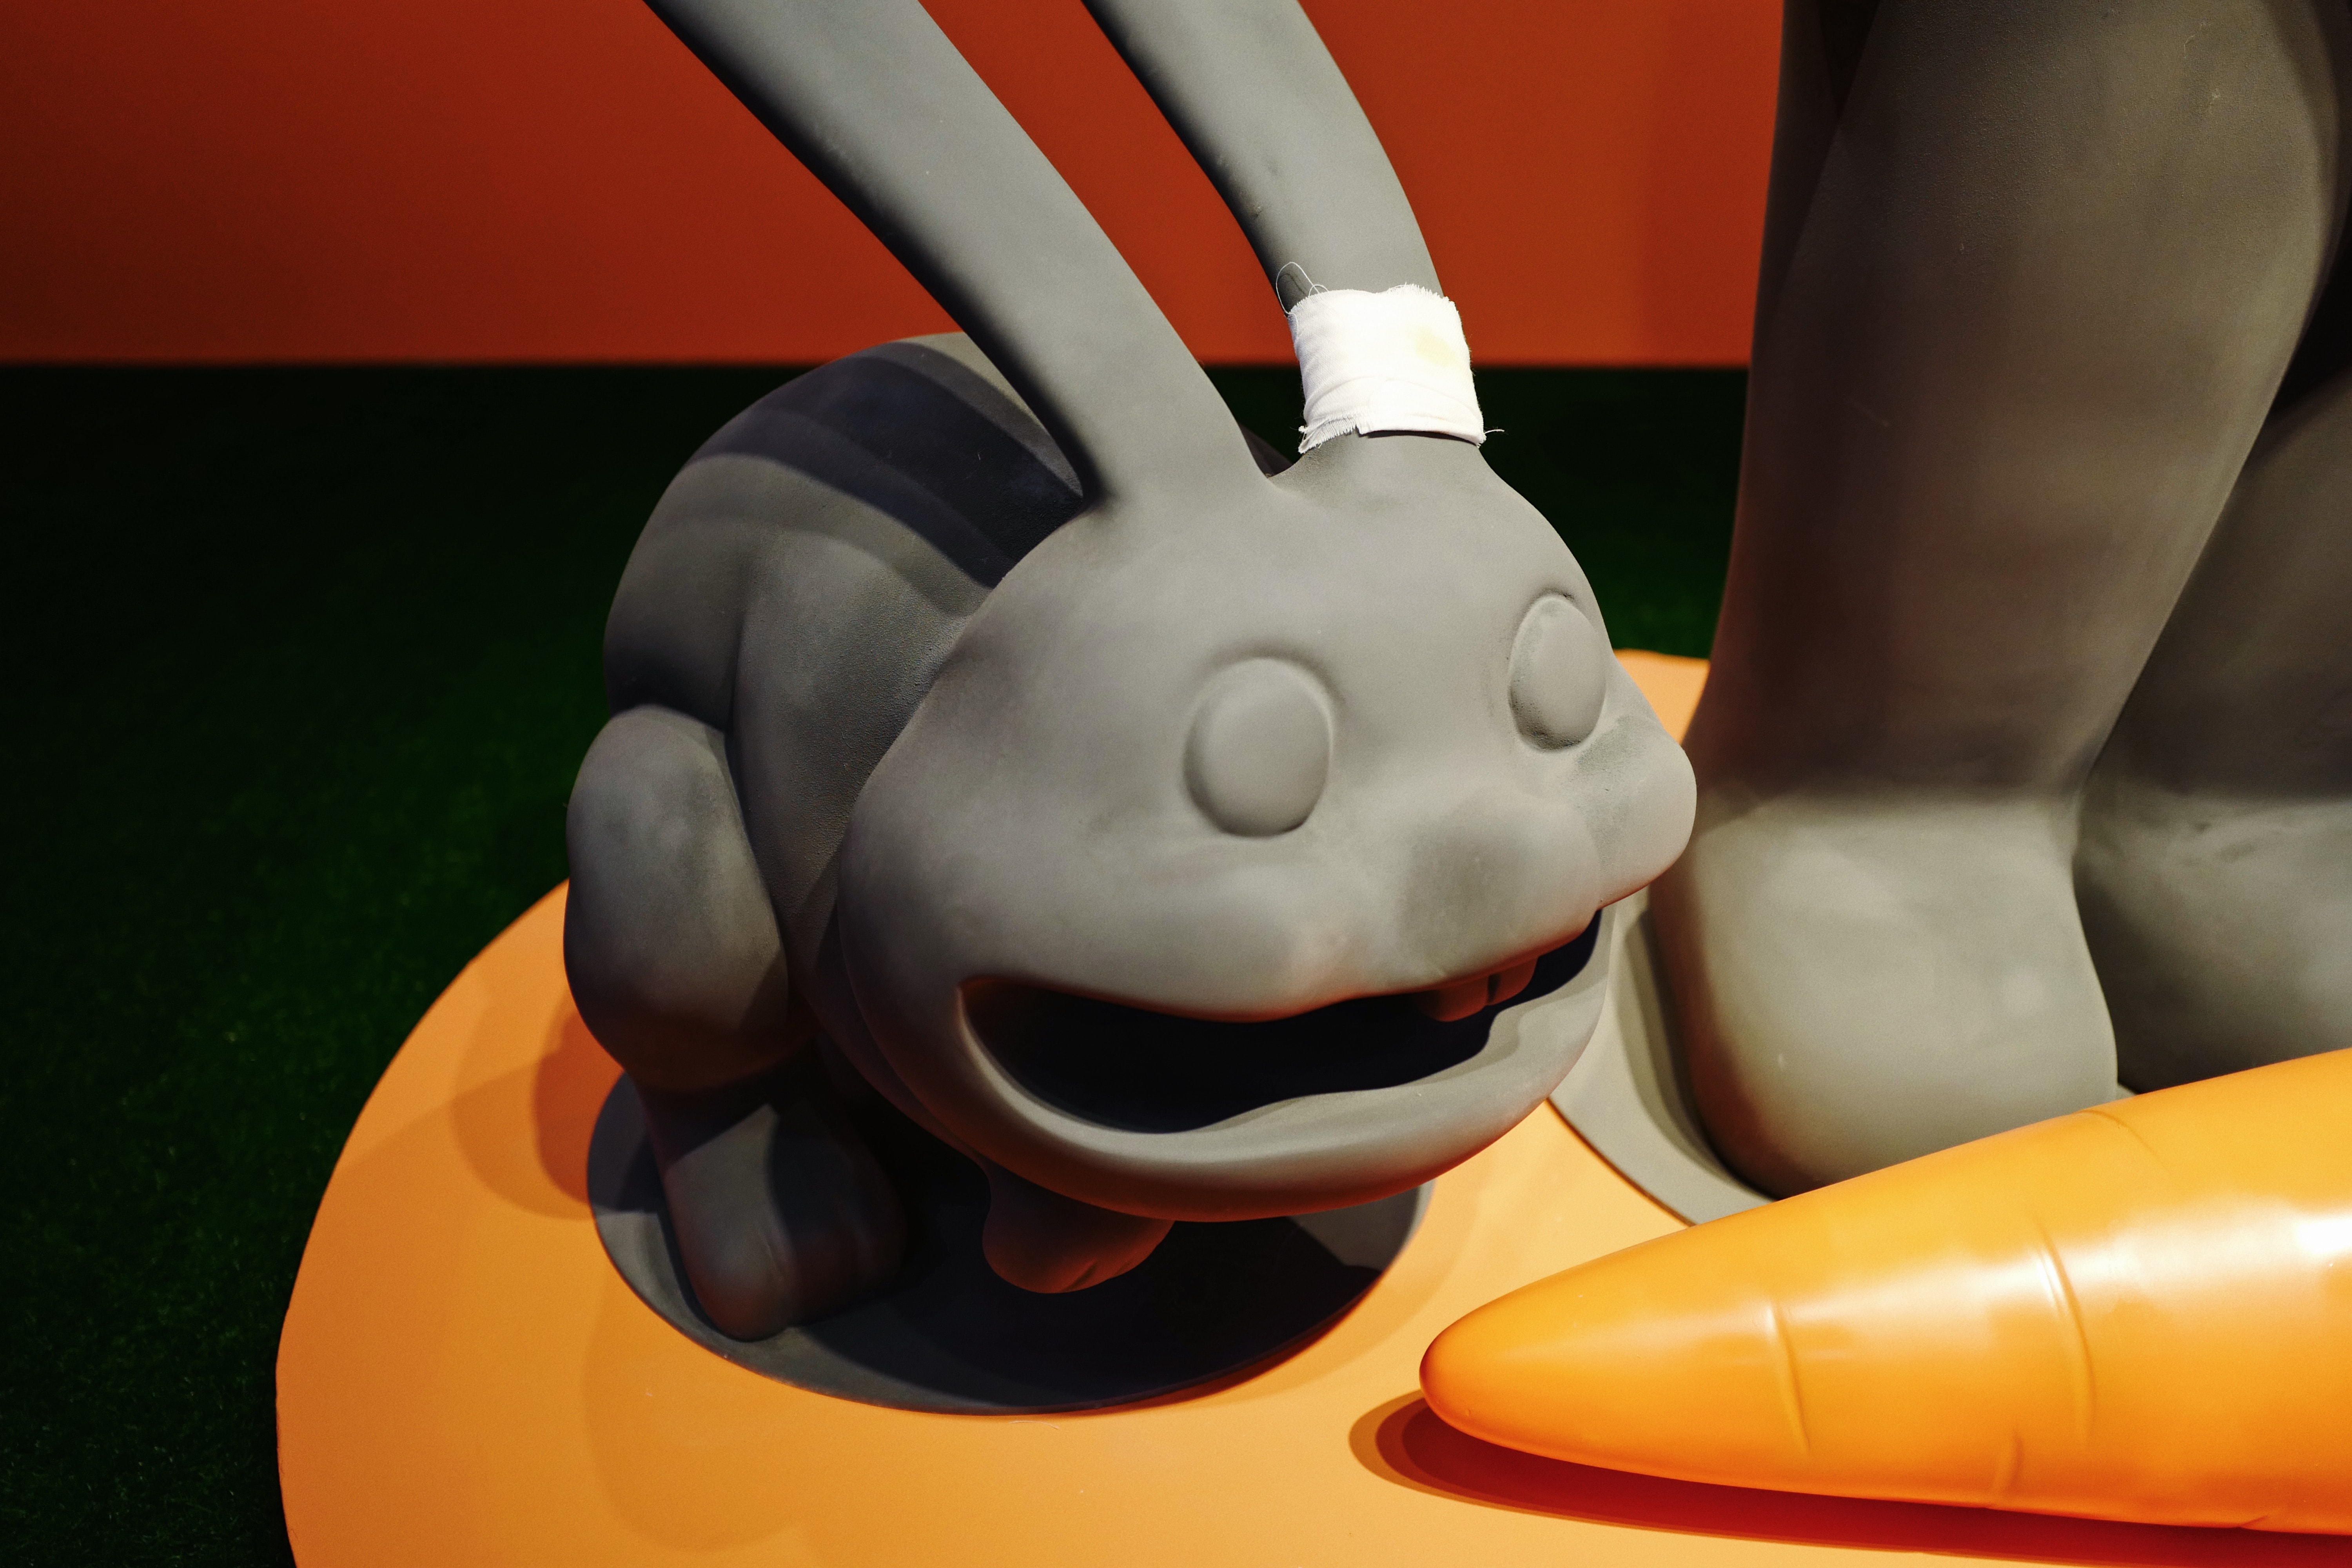 走進藝術家張權全新個人展覽「遊樂園 III – 兔子失物招領中心」